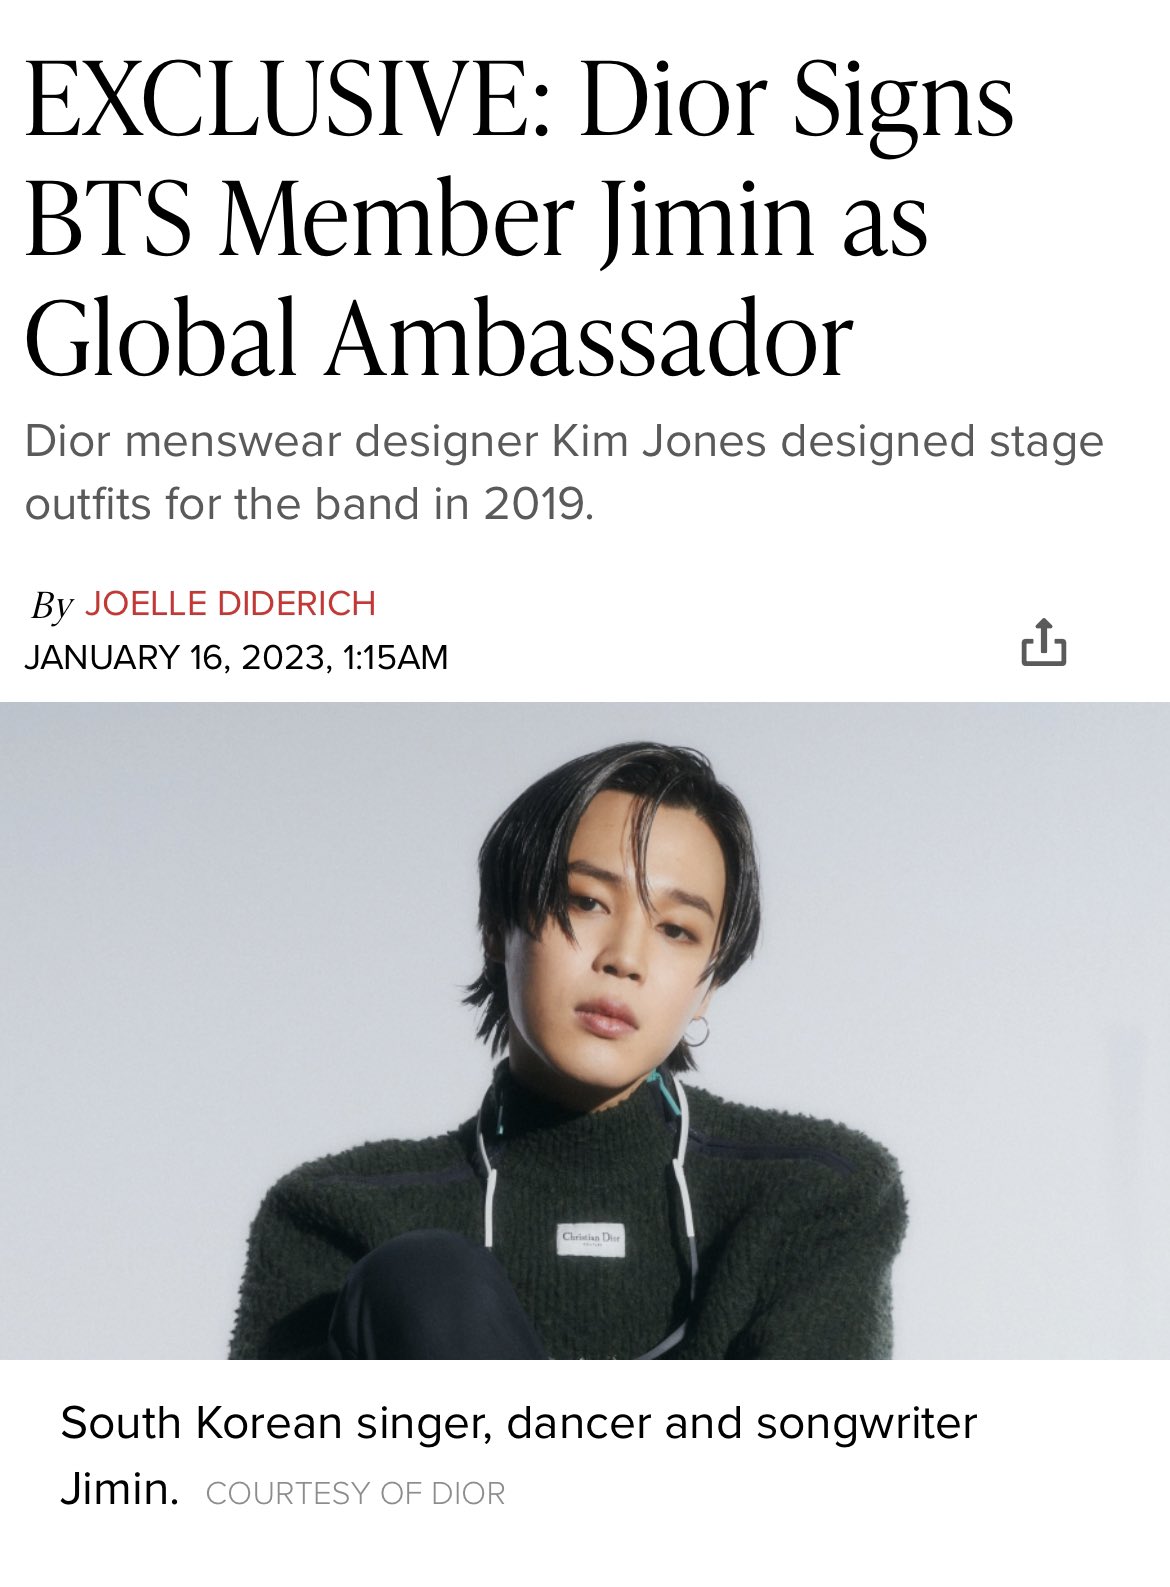 BTS's Jimin becomes global ambassador for Dior